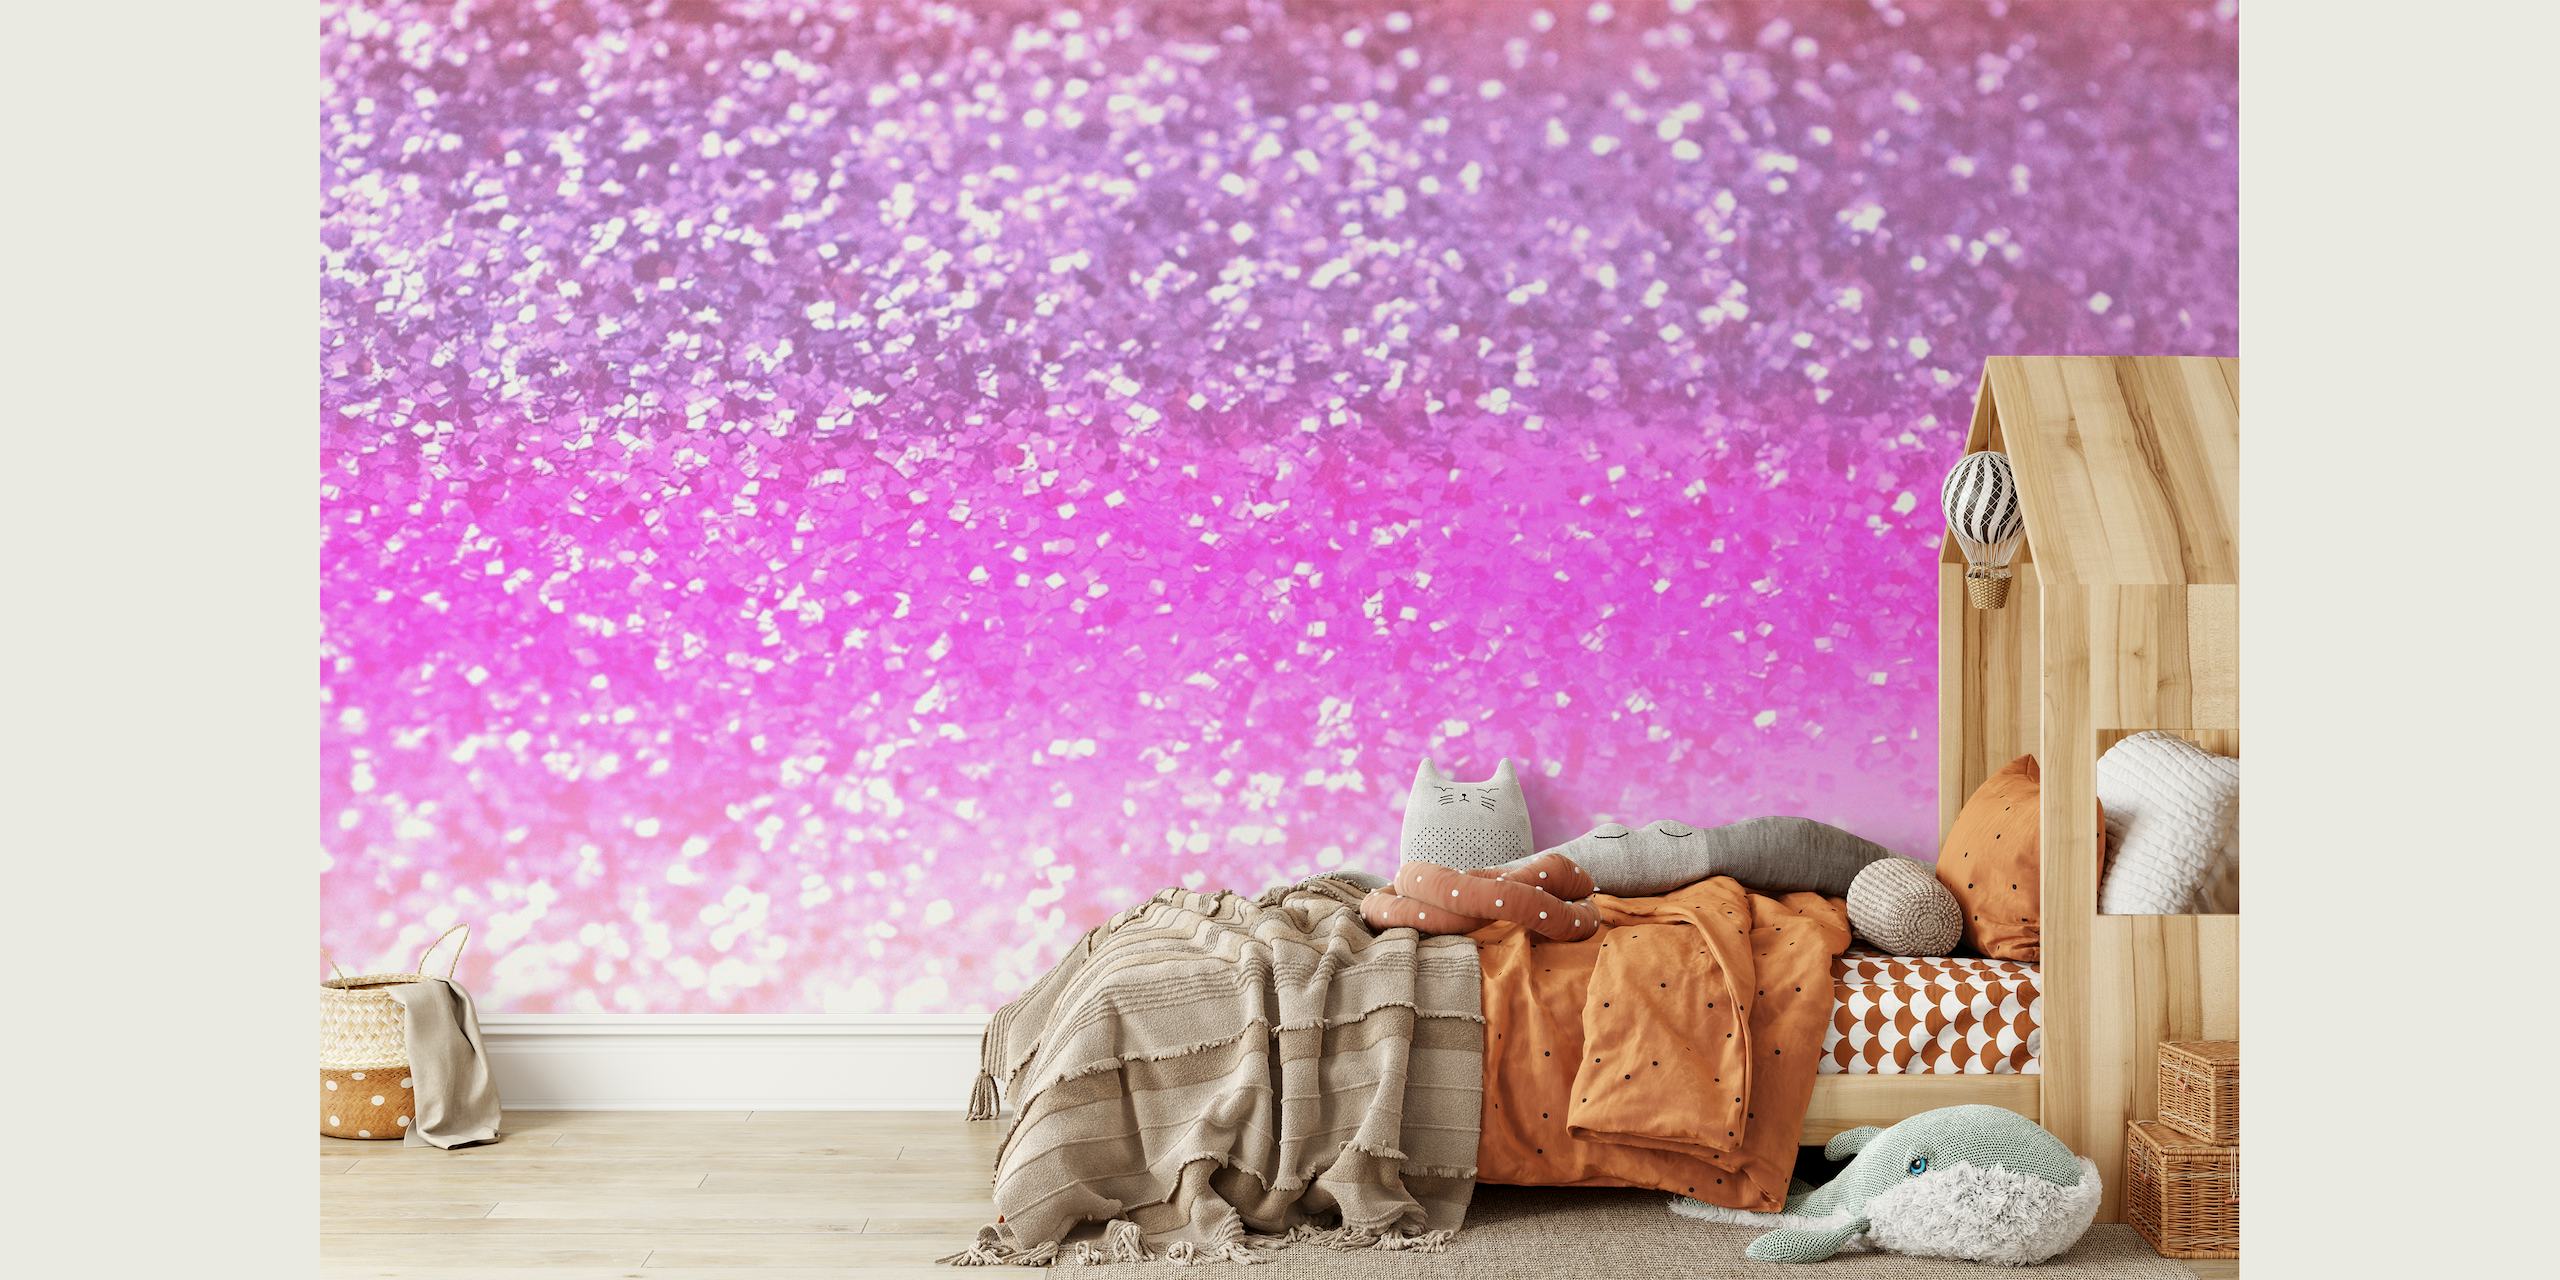 Glitzerndes Wandbild mit Farbverlauf in Rosa und Lila für eine zauberhafte Raumatmosphäre.